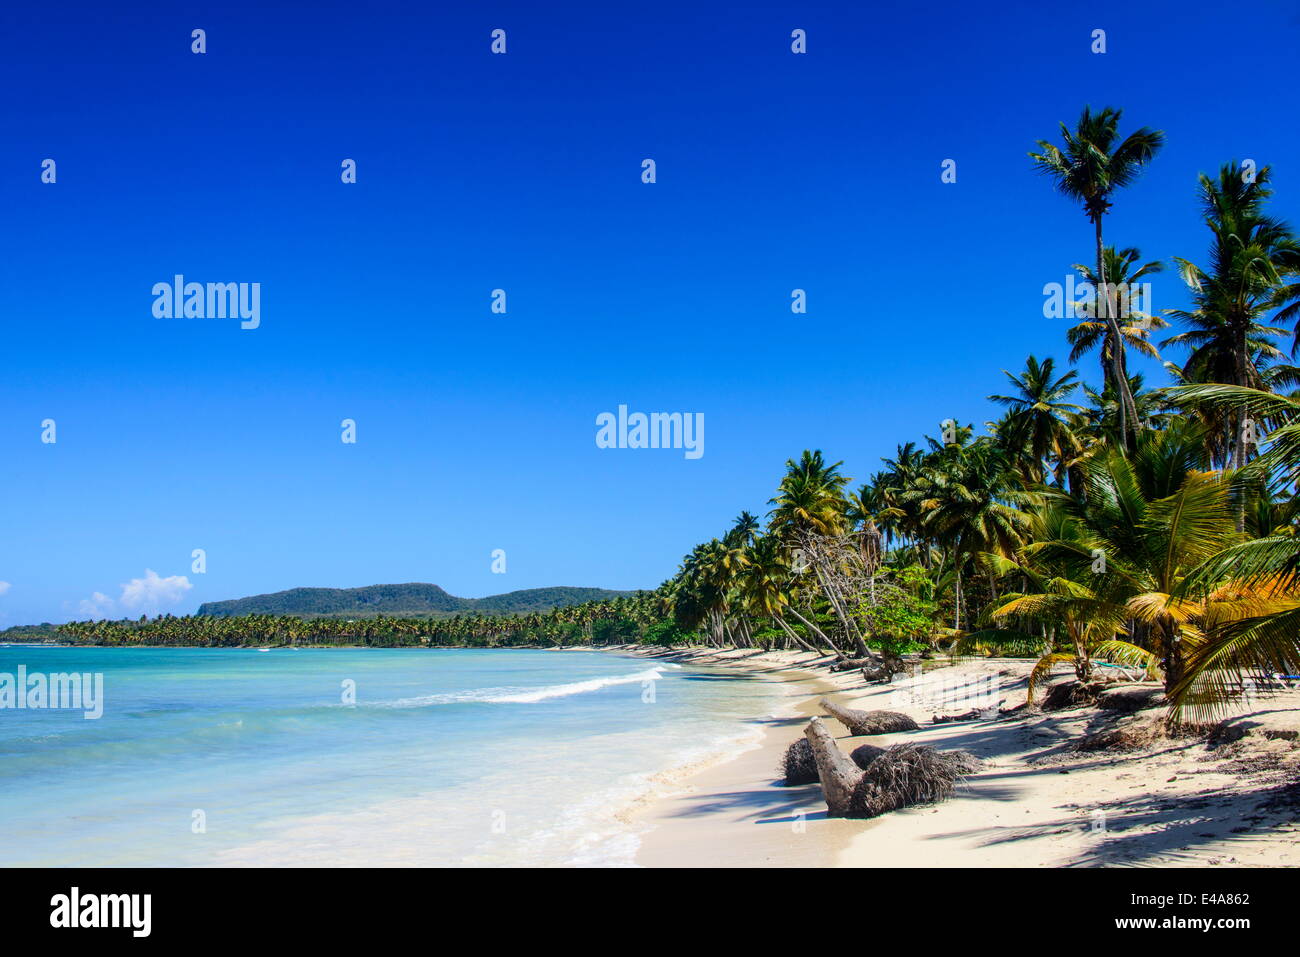 Playa Grande, Las Galeras, Semana péninsule, République dominicaine, Antilles, Caraïbes, Amérique Centrale Banque D'Images